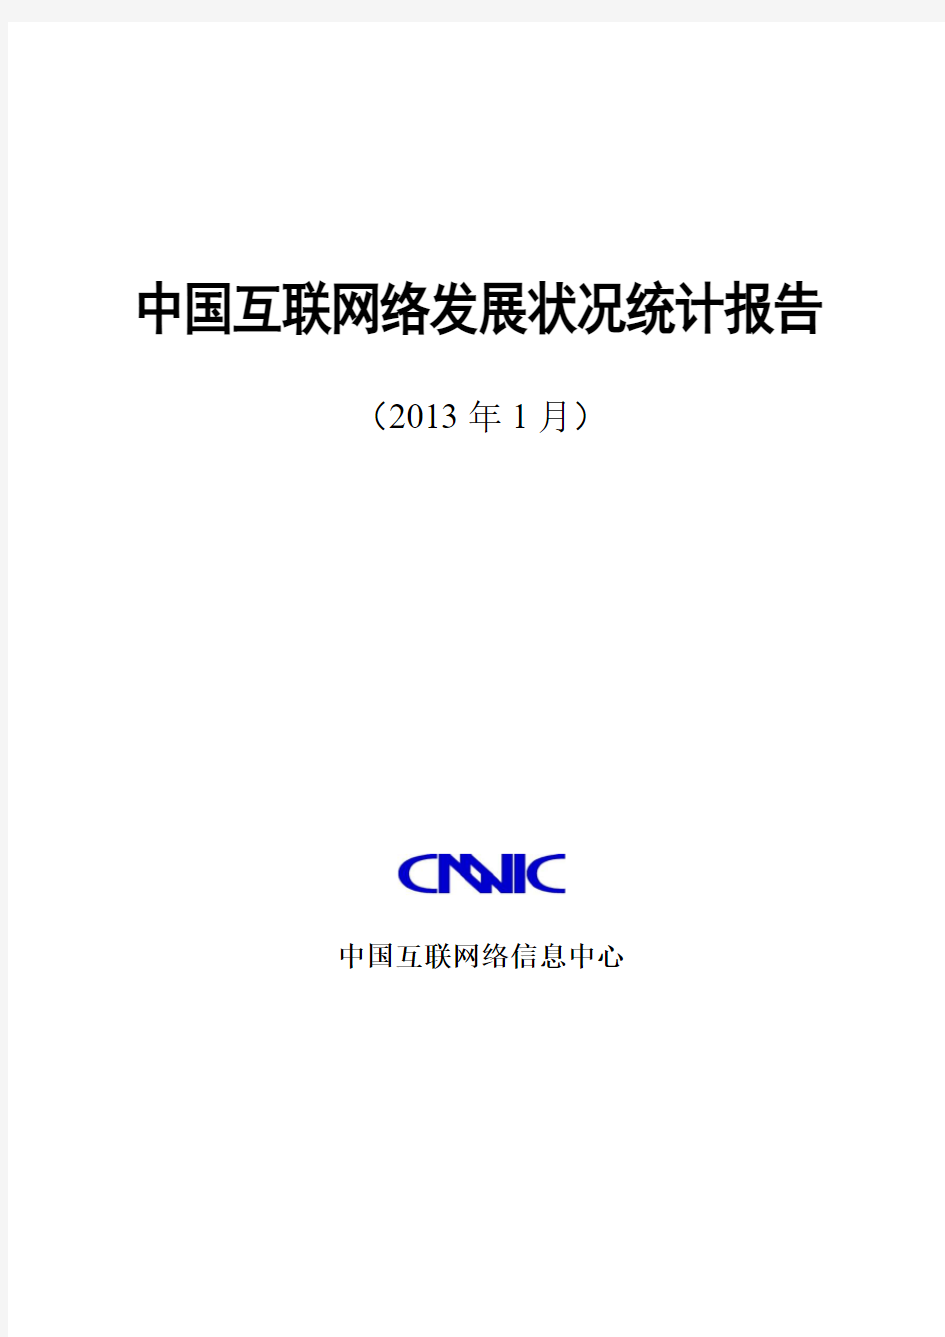 2012年中国互联网发展状况报告